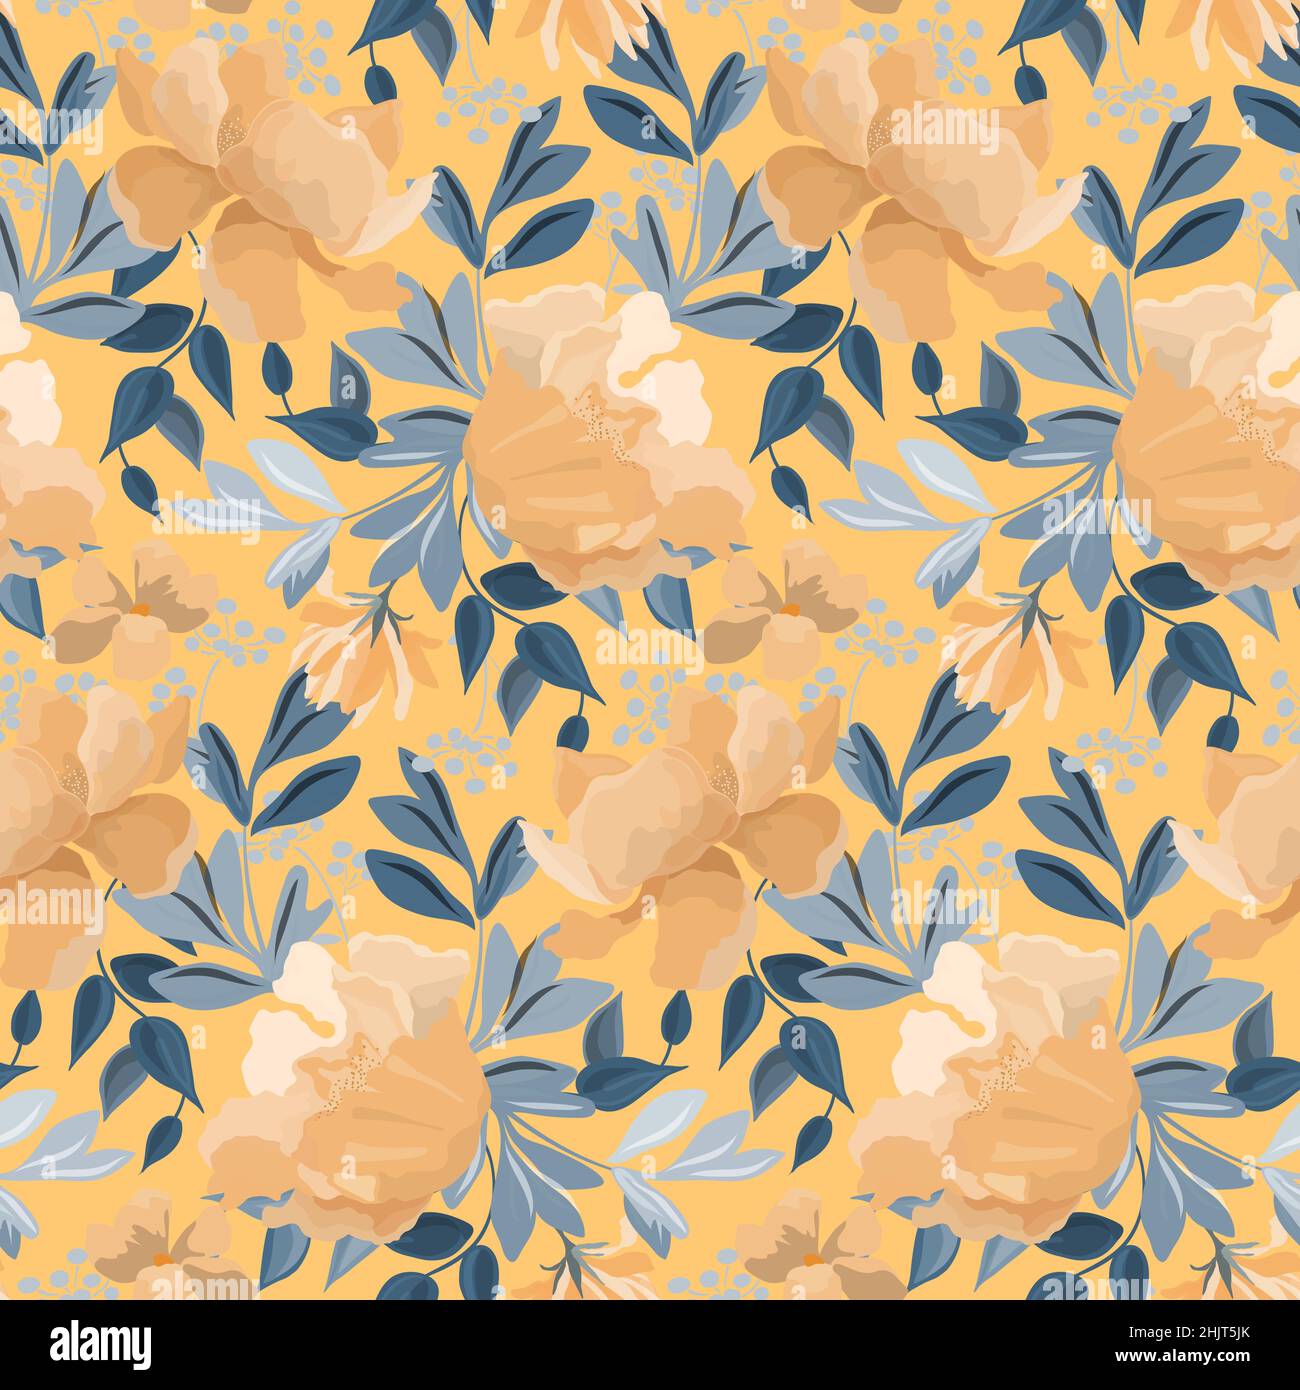 Vektor-Nahtloses Blumenmuster. Design mit gelb-orangen Blüten und grünen Blättern auf gelbem Hintergrund. Stock Vektor